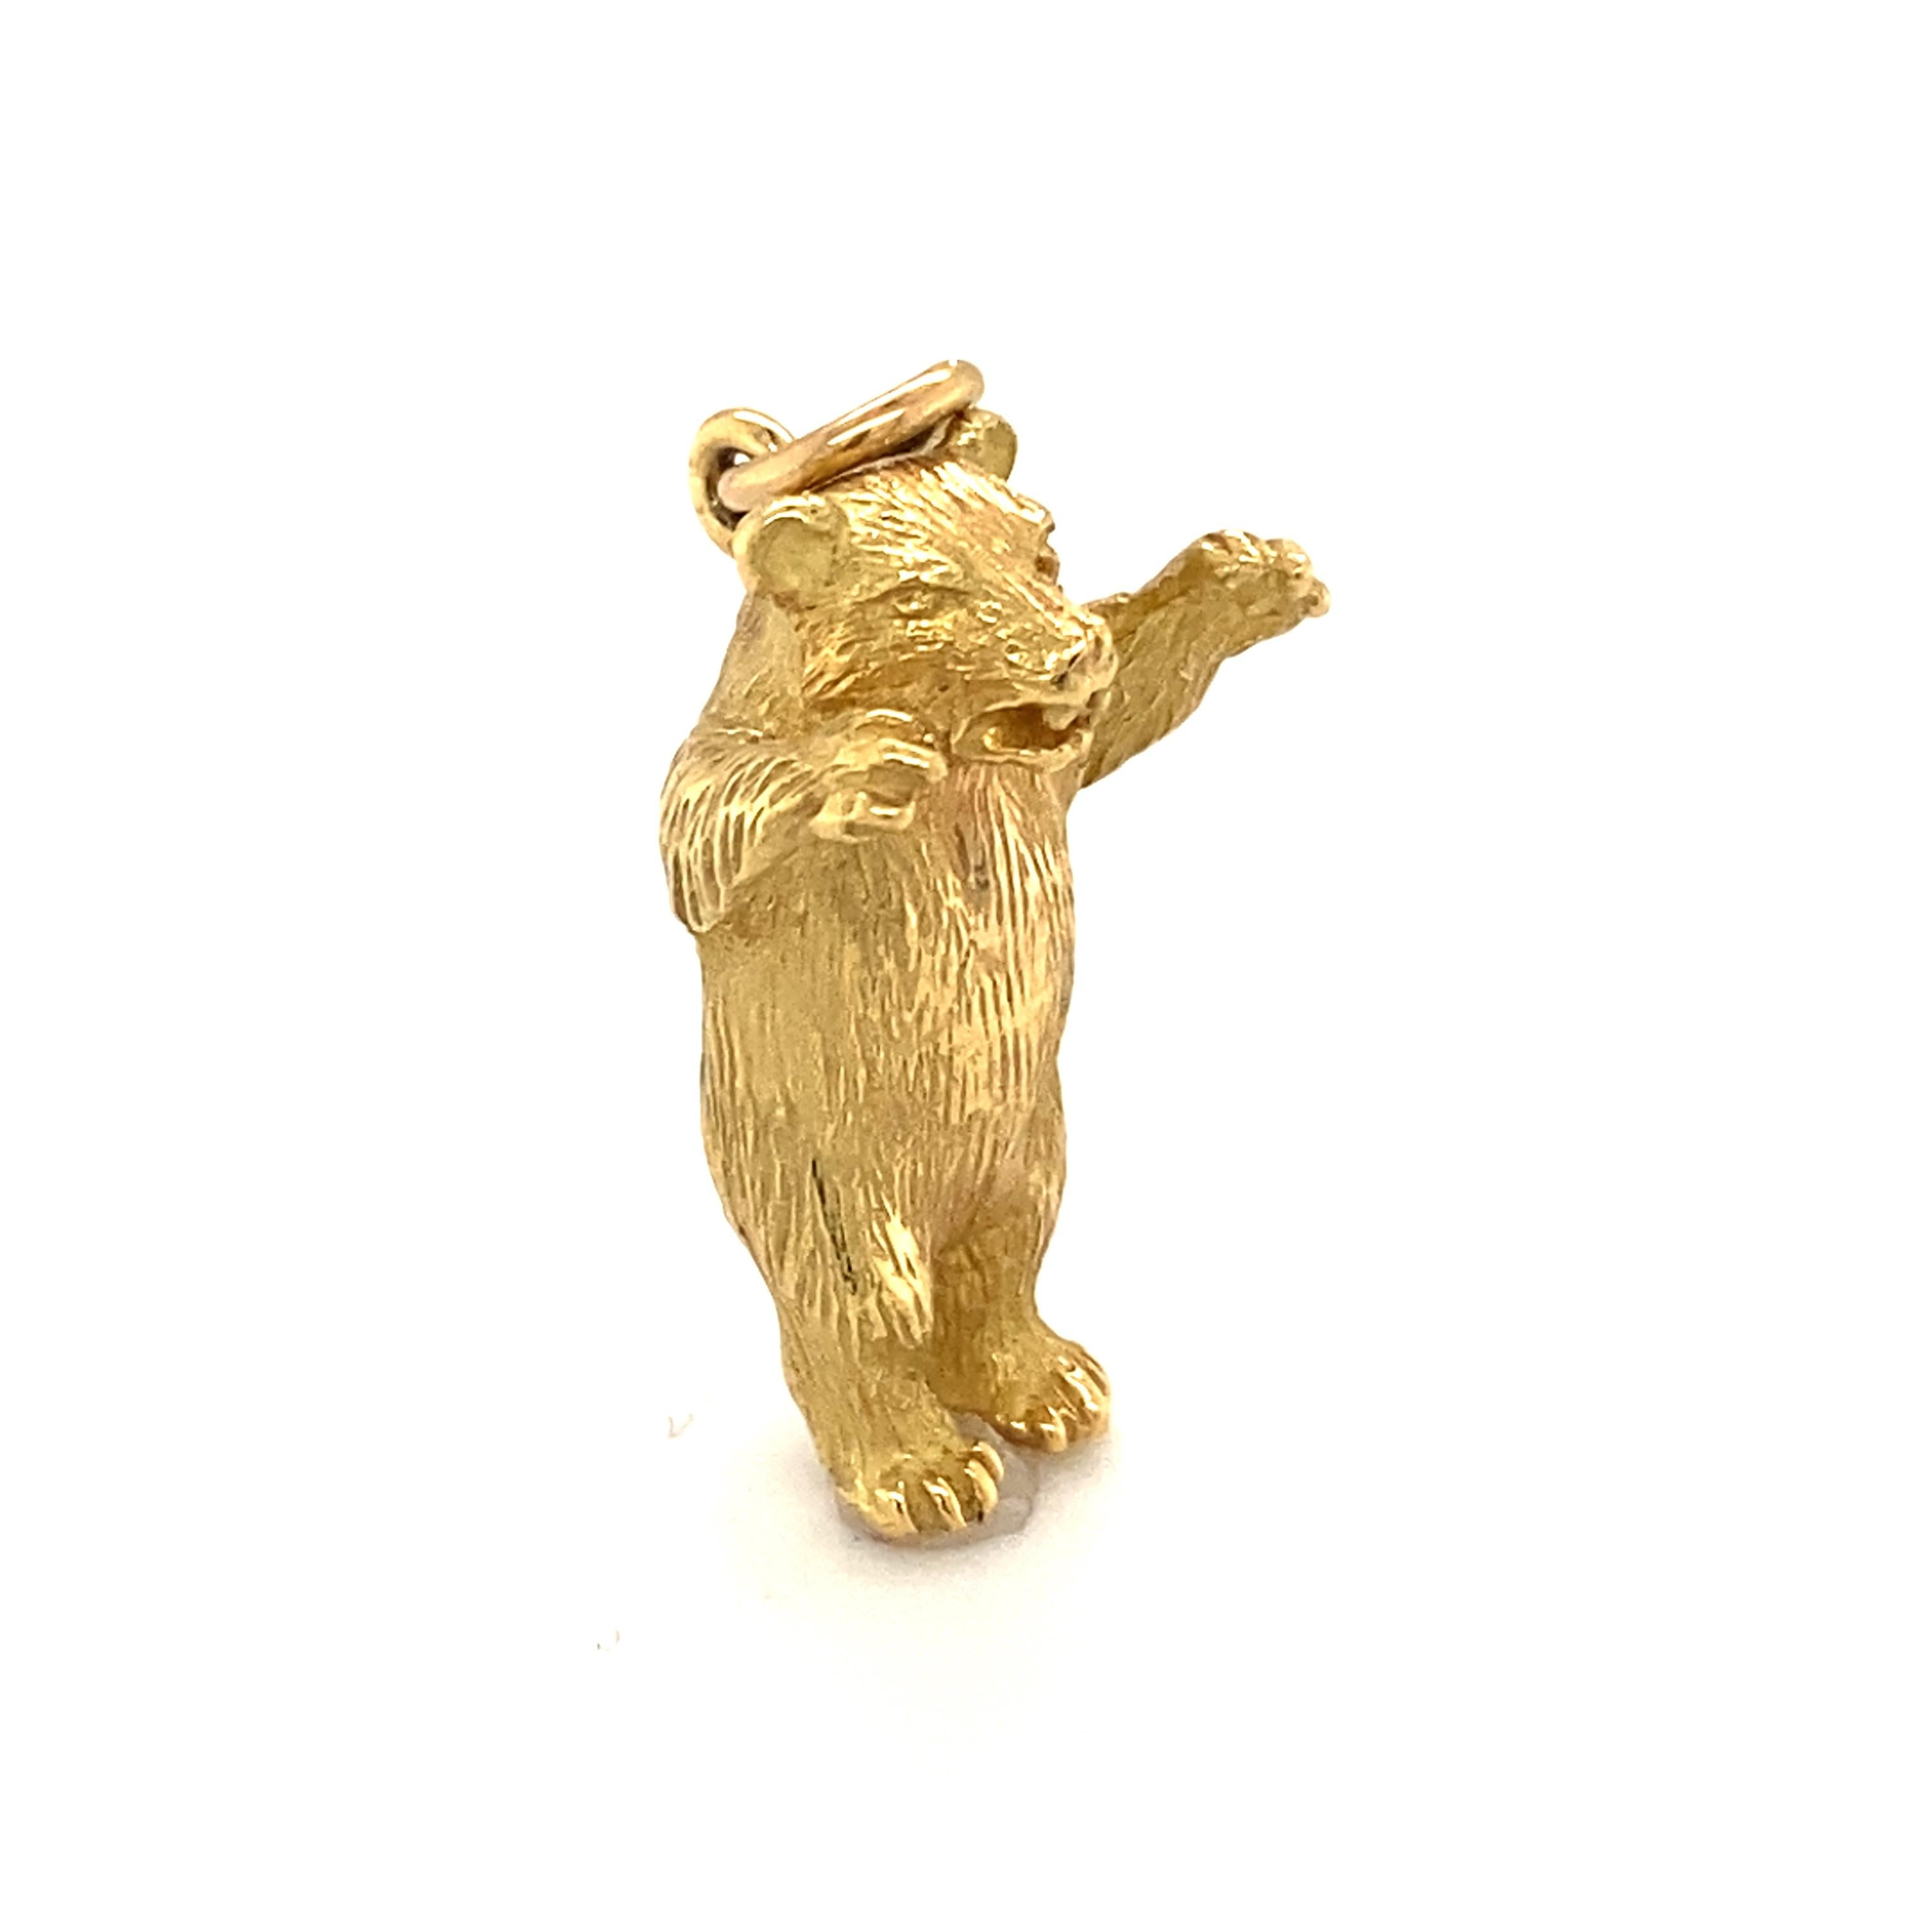 Détails de la breloque :
Type de métal : or jaune 18 carats
Poids : 8,7 grammes
Mesures : 1 pouce de longueur x 0,25 pouce de largeur

pendentif en forme d'ours des années 1960 en or jaune 18 carats, avec de nombreux détails mettant en valeur